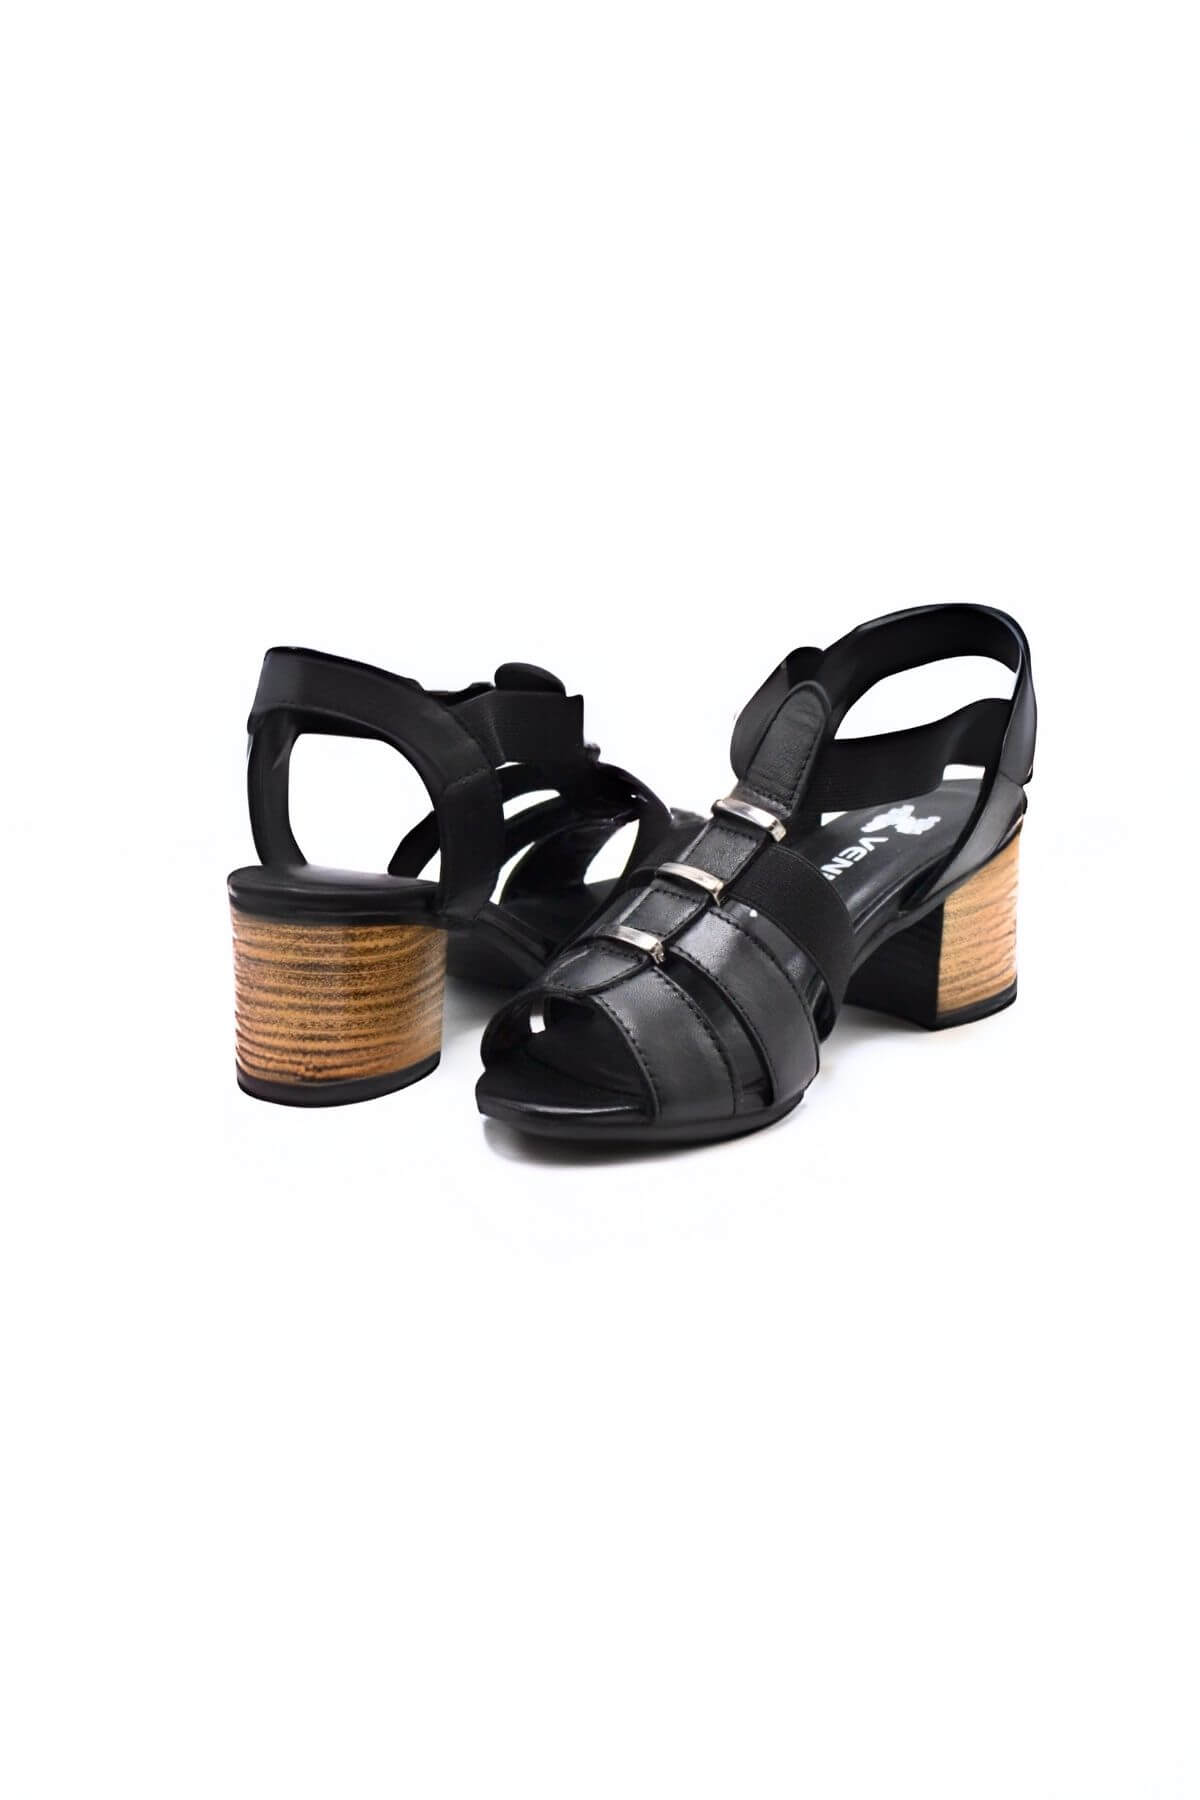 Kadın Yazlık Topuklu Deri Sandalet Siyah 1857227Y - Thumbnail